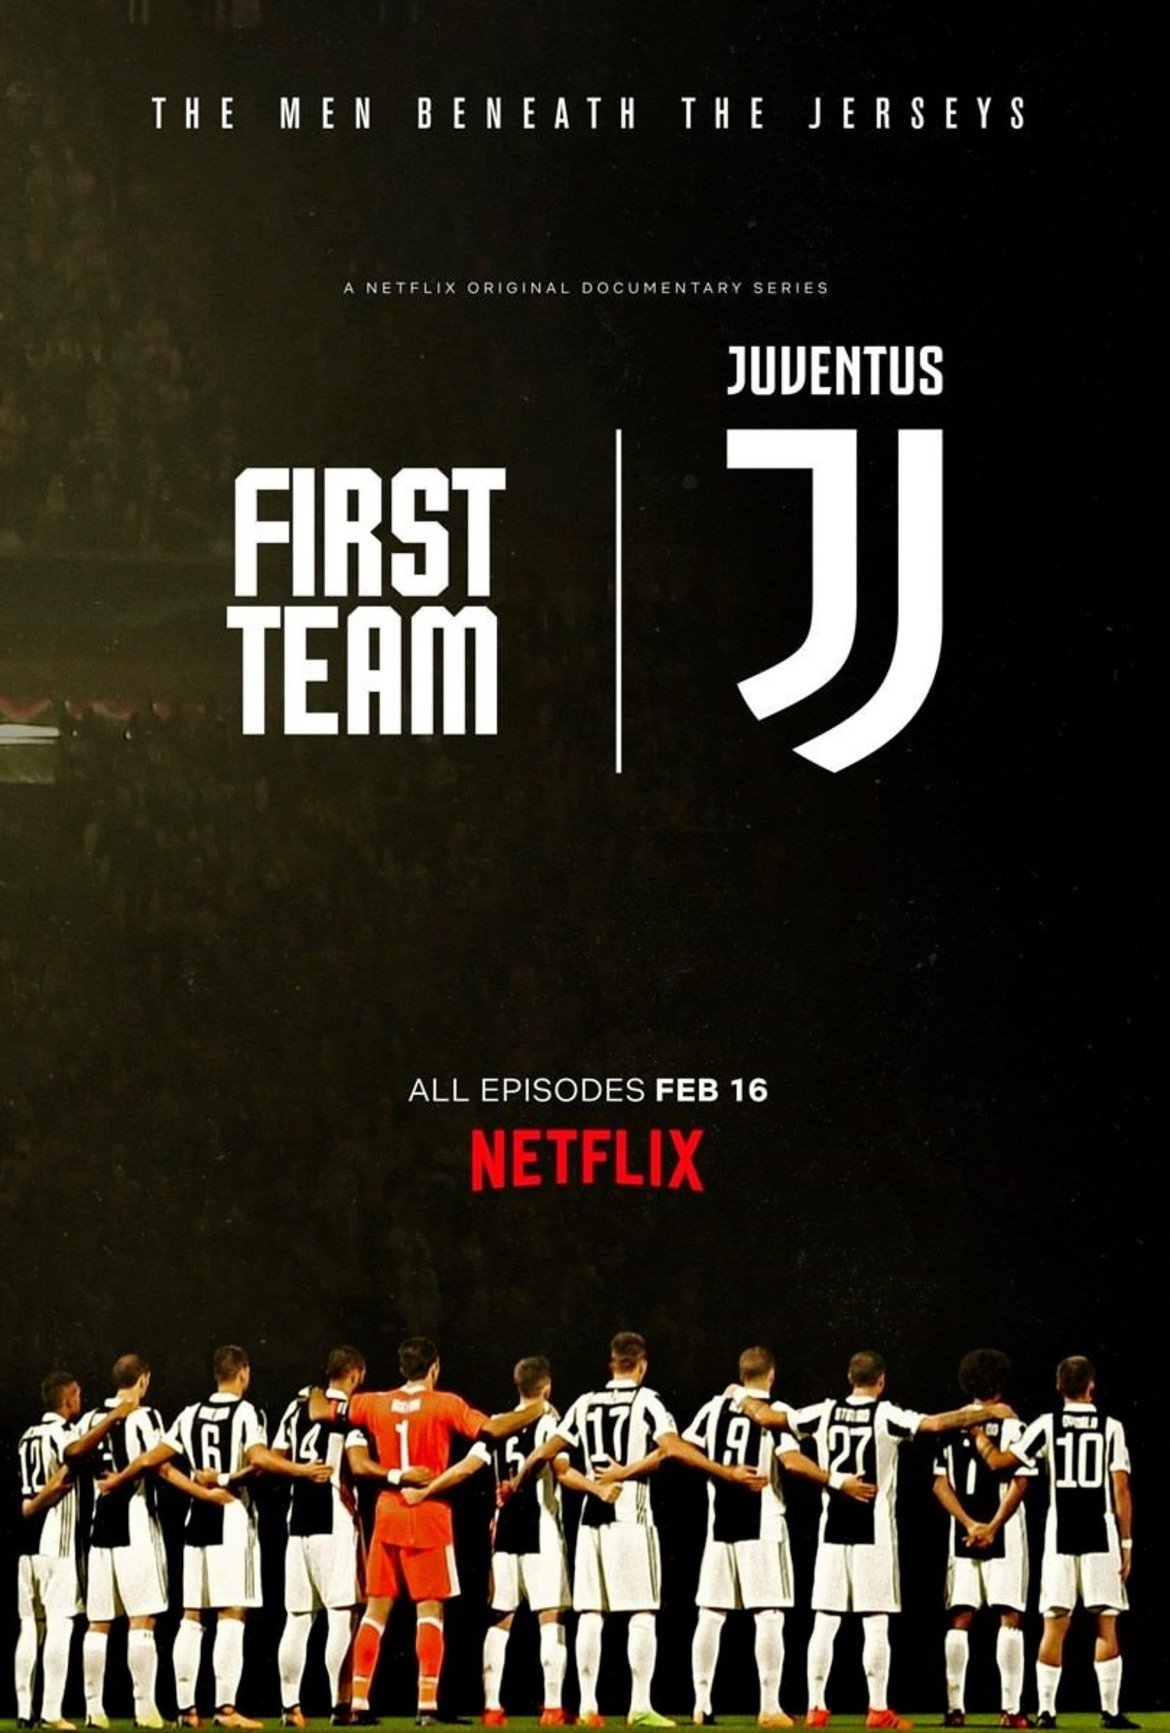 First Team: Juventus
Документалните серии на Netflix проследяват настоящия сезон на Ювентус, който завърши със седма поредна титла на "бианконерите". Джиджи Буфон и Гонсало Игуаин са сред звездите, които можете да видите отблизо. Легендата Дел Пиеро също участва в поредицата. До момента са излезли половината от 6-те серии, които са с дължина от 40 минути всяка.